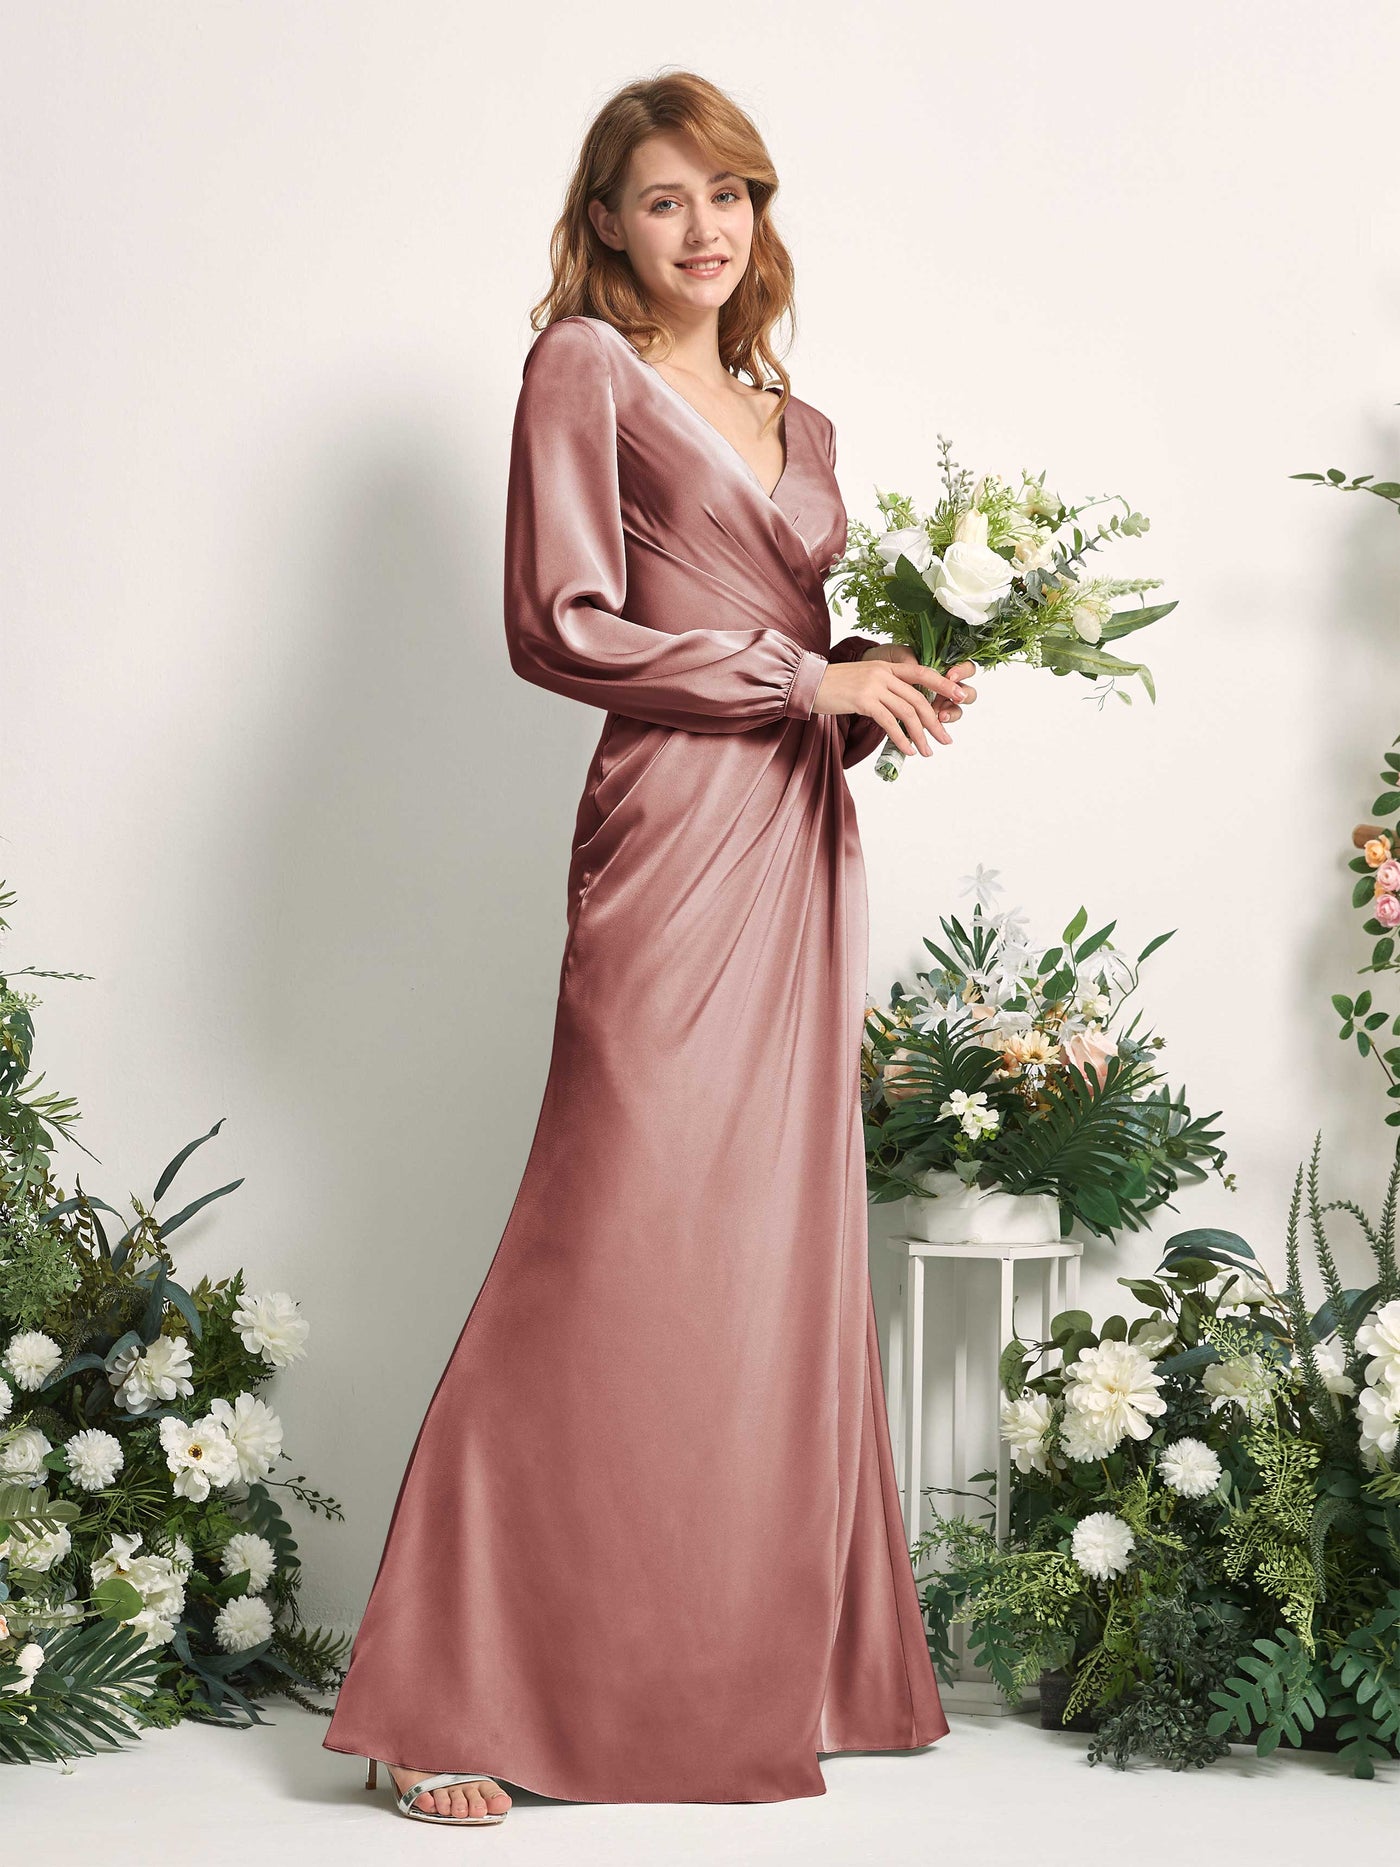 Desert Rose Bridesmaid Dresses Bridesmaid Dress Ball Gown Satin V-neck Full Length Long Sleeves Wedding Party Dress (80225117)#color_desert-rose